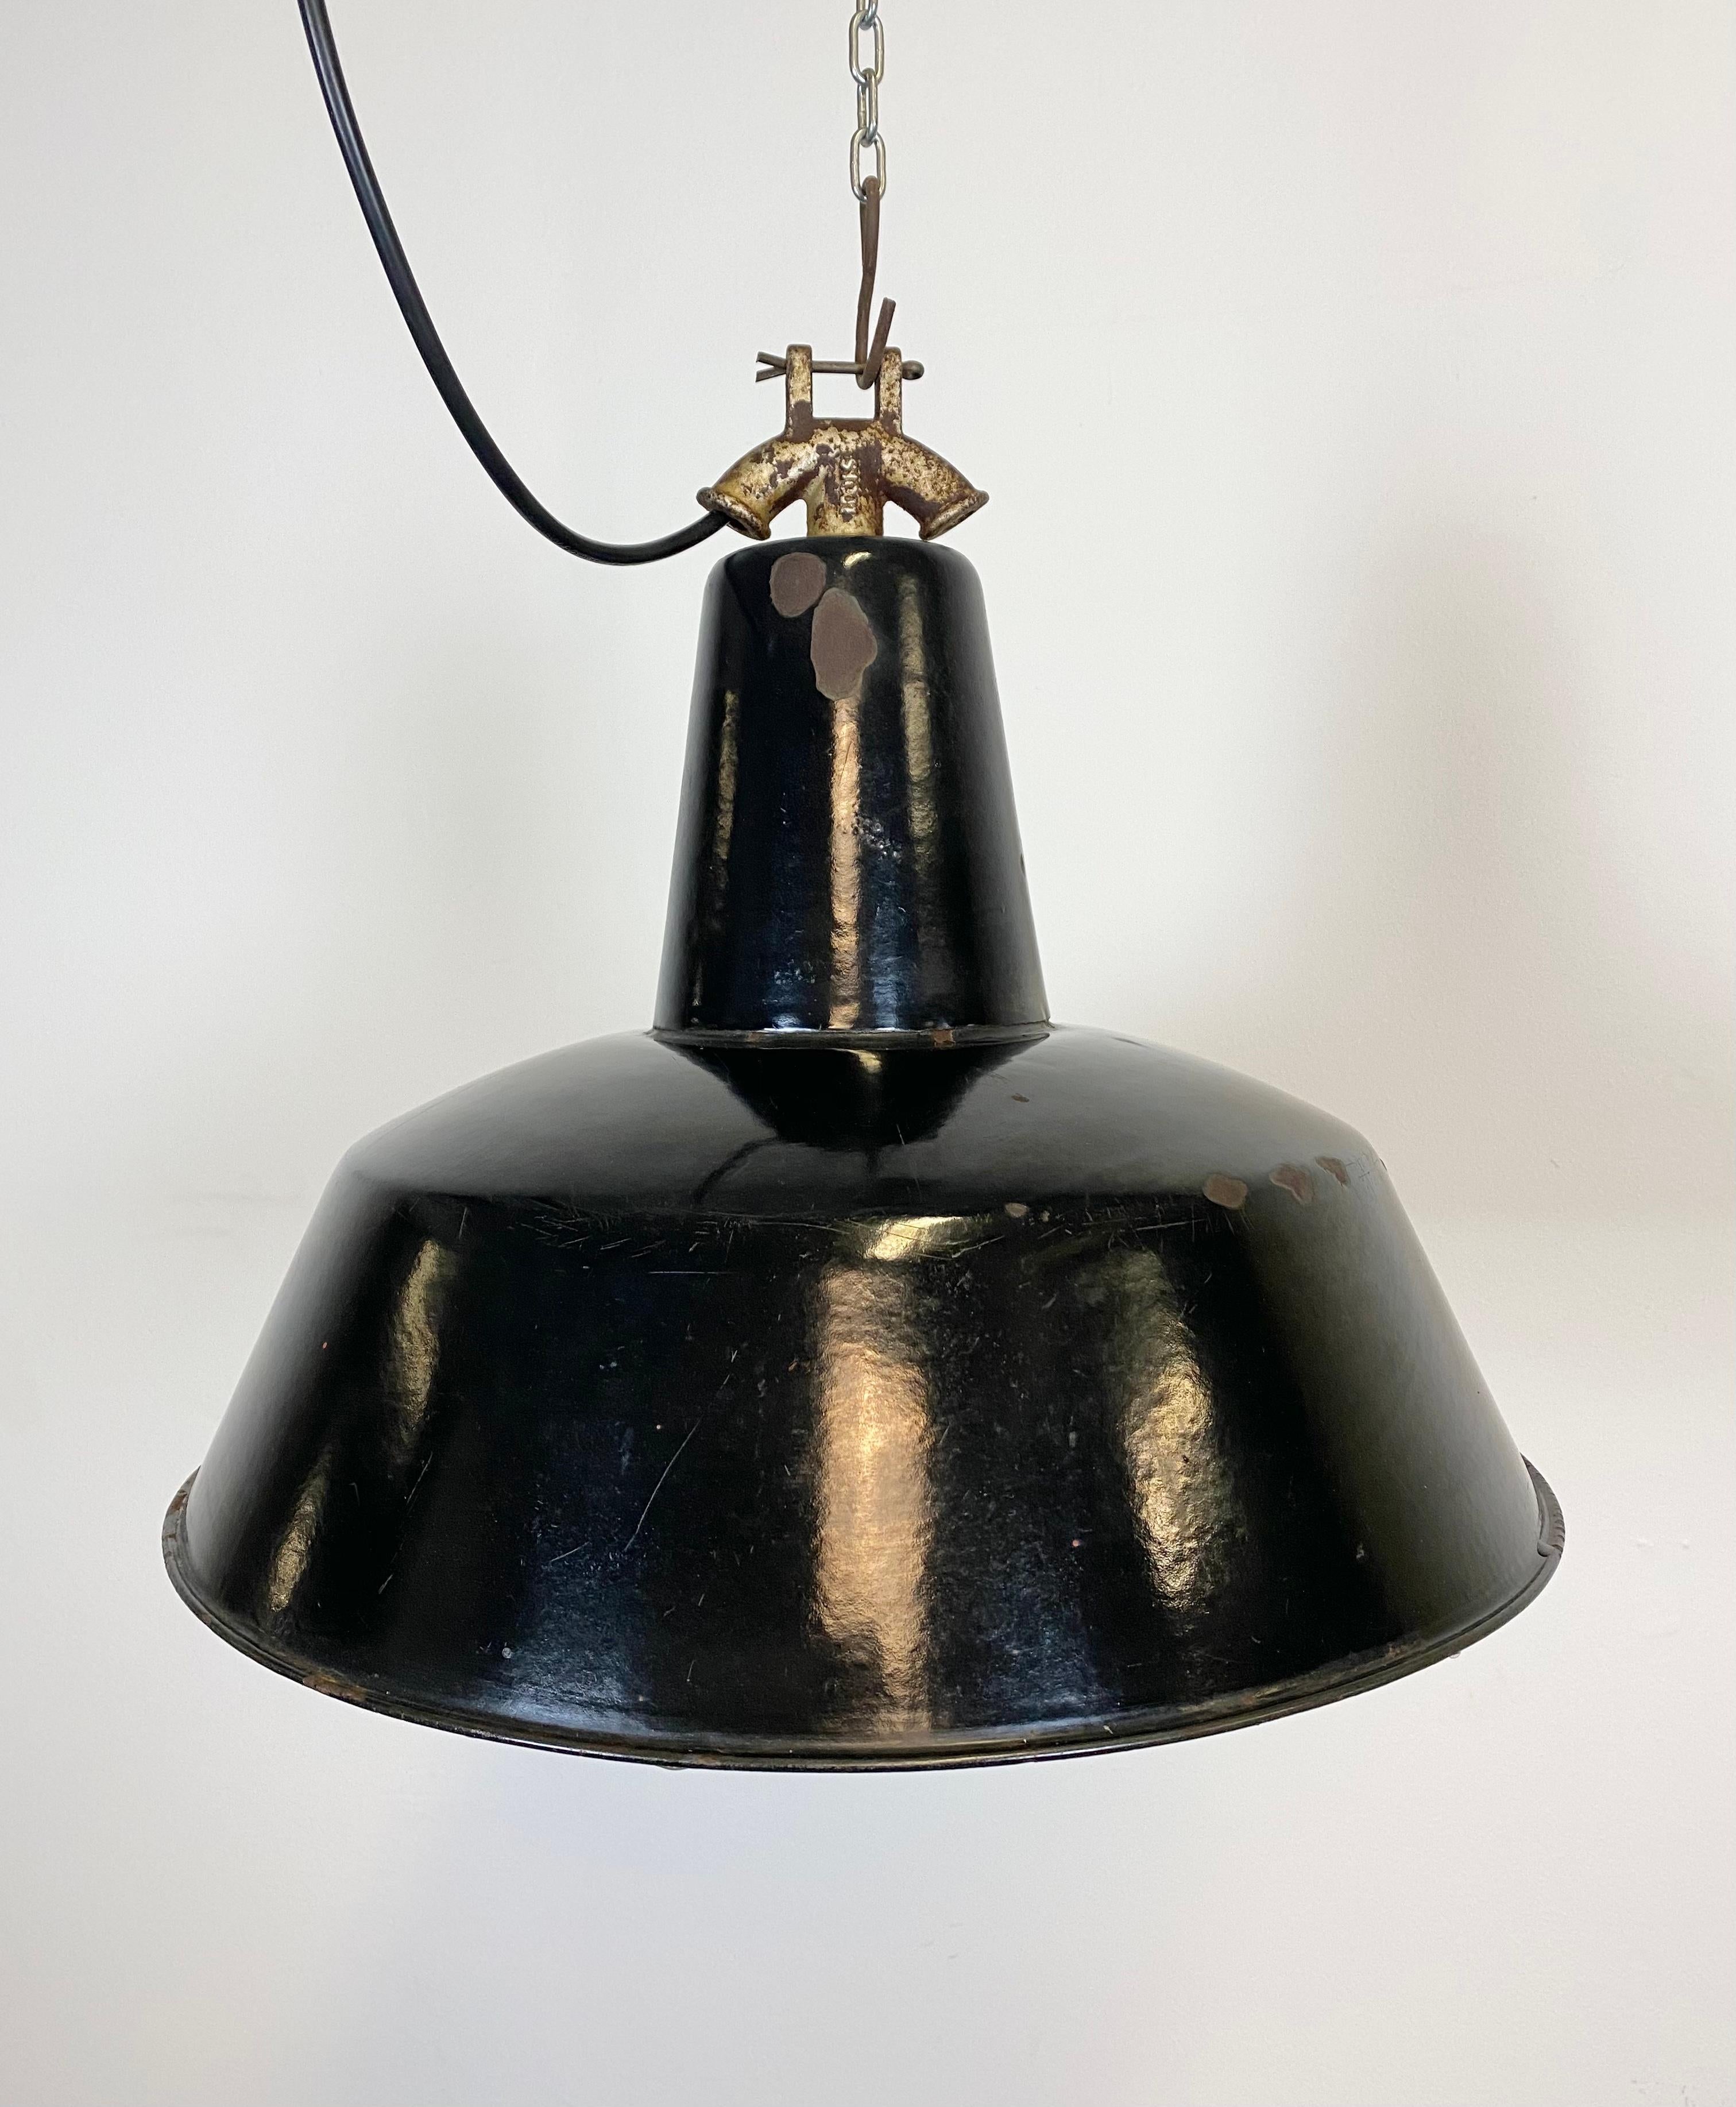 Czech Vintage Black Enamel Industrial Factory Pendant Lamp, 1930s